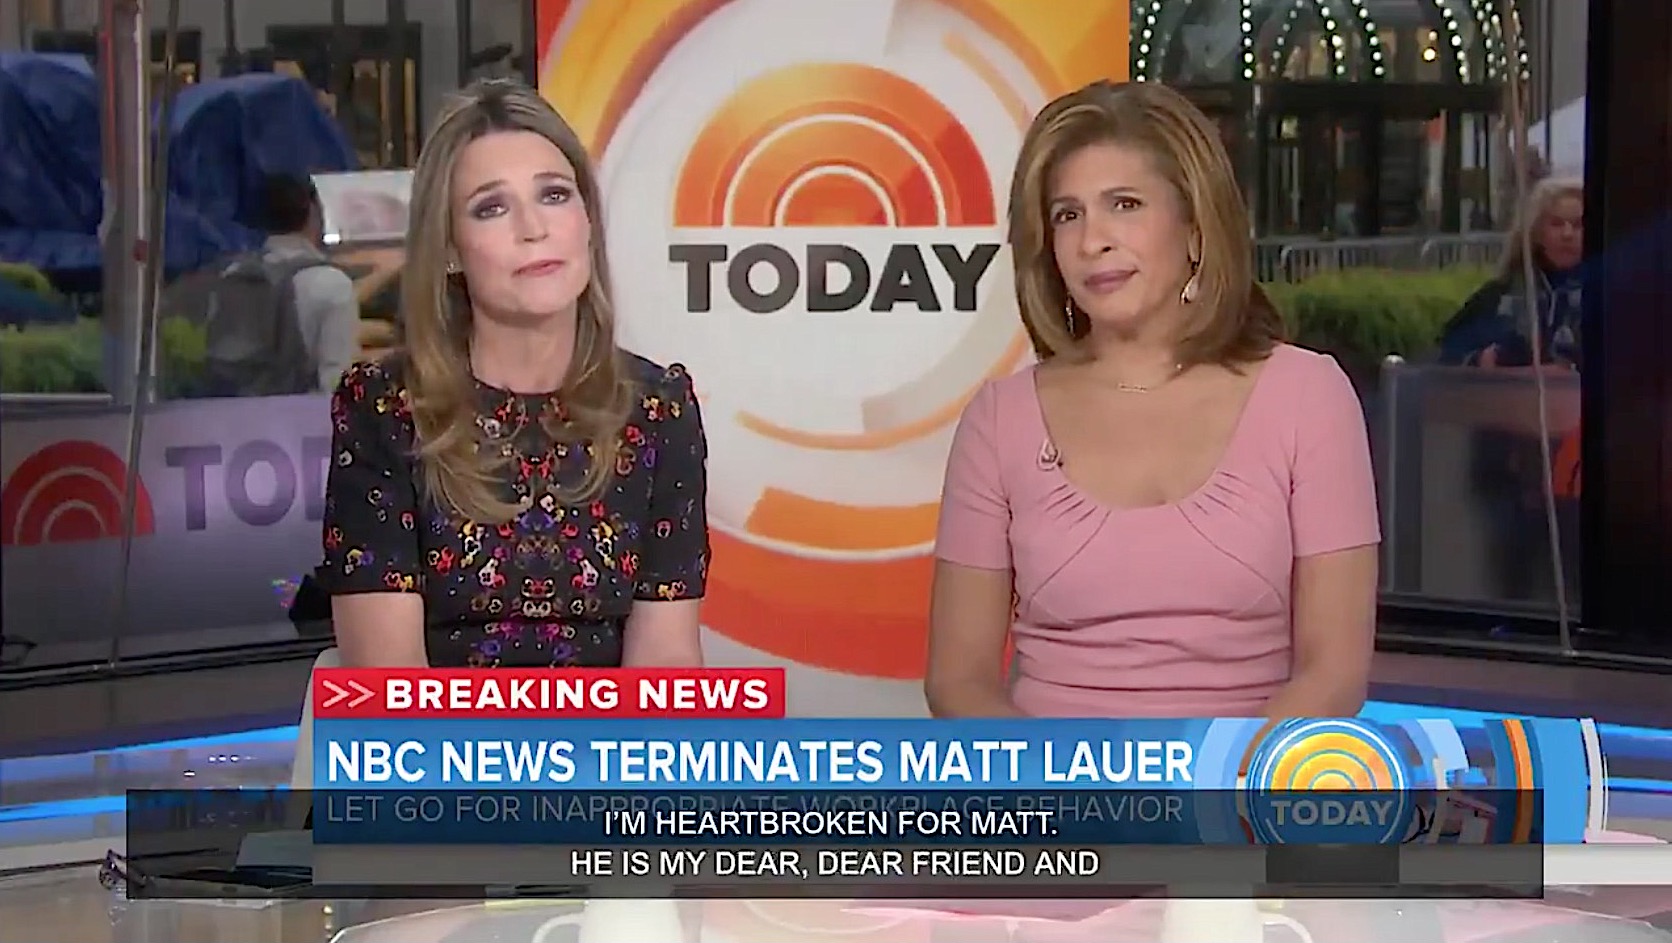 NBC fired Matt Lauer